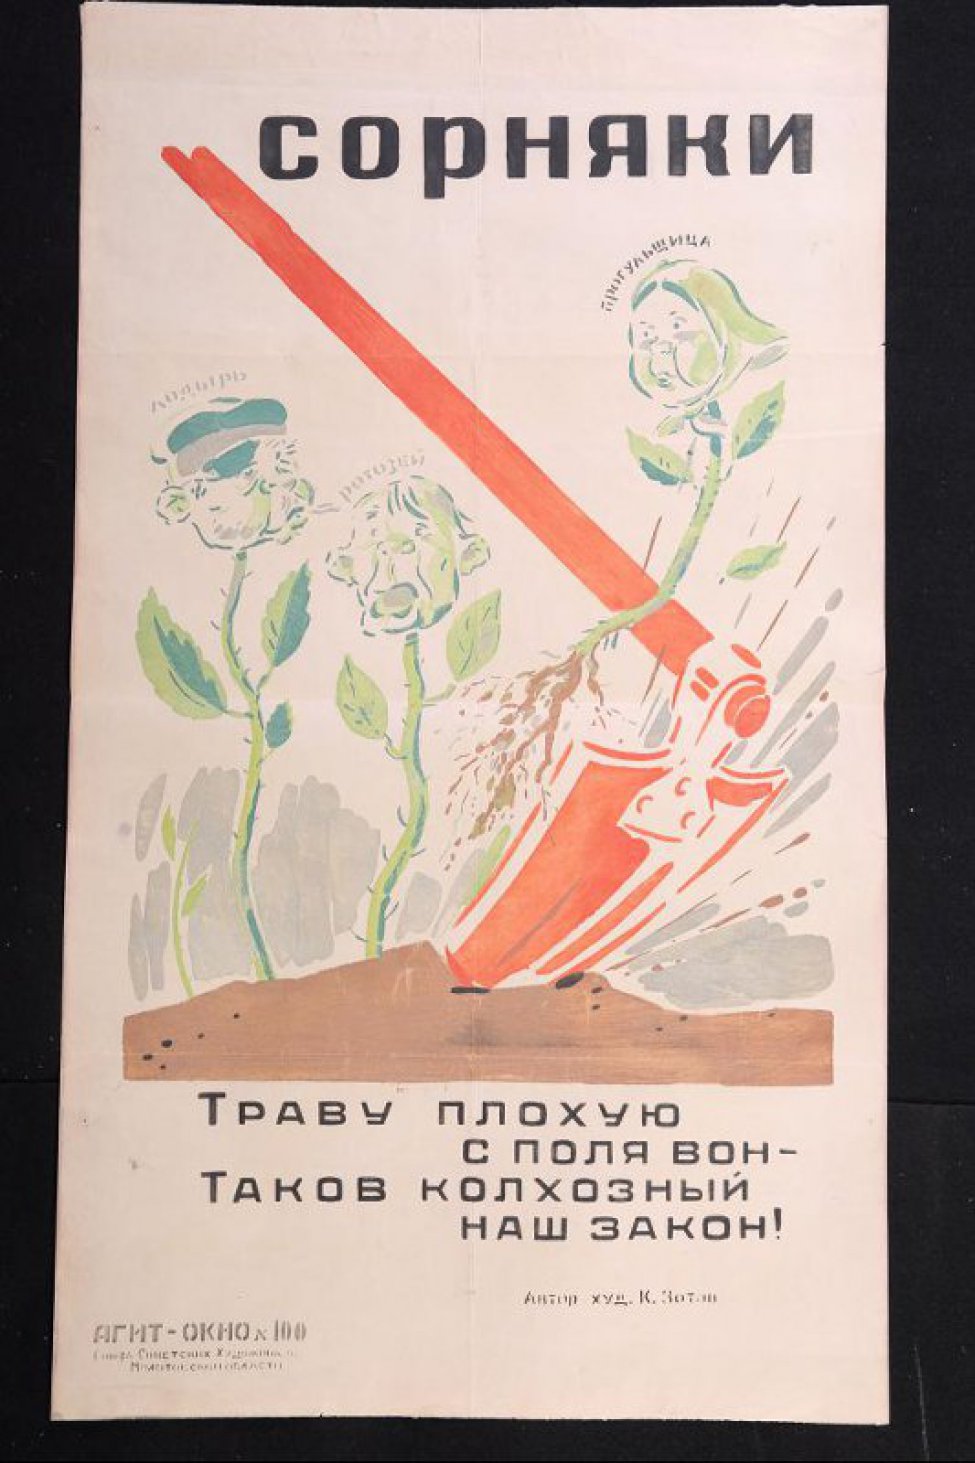 Изображено: красный заступ удаляет из почвы сорняки с головами лодыря, ротозея и прогульщицы, текст: " траву плохую с поля вон- таков советский наш закон!"